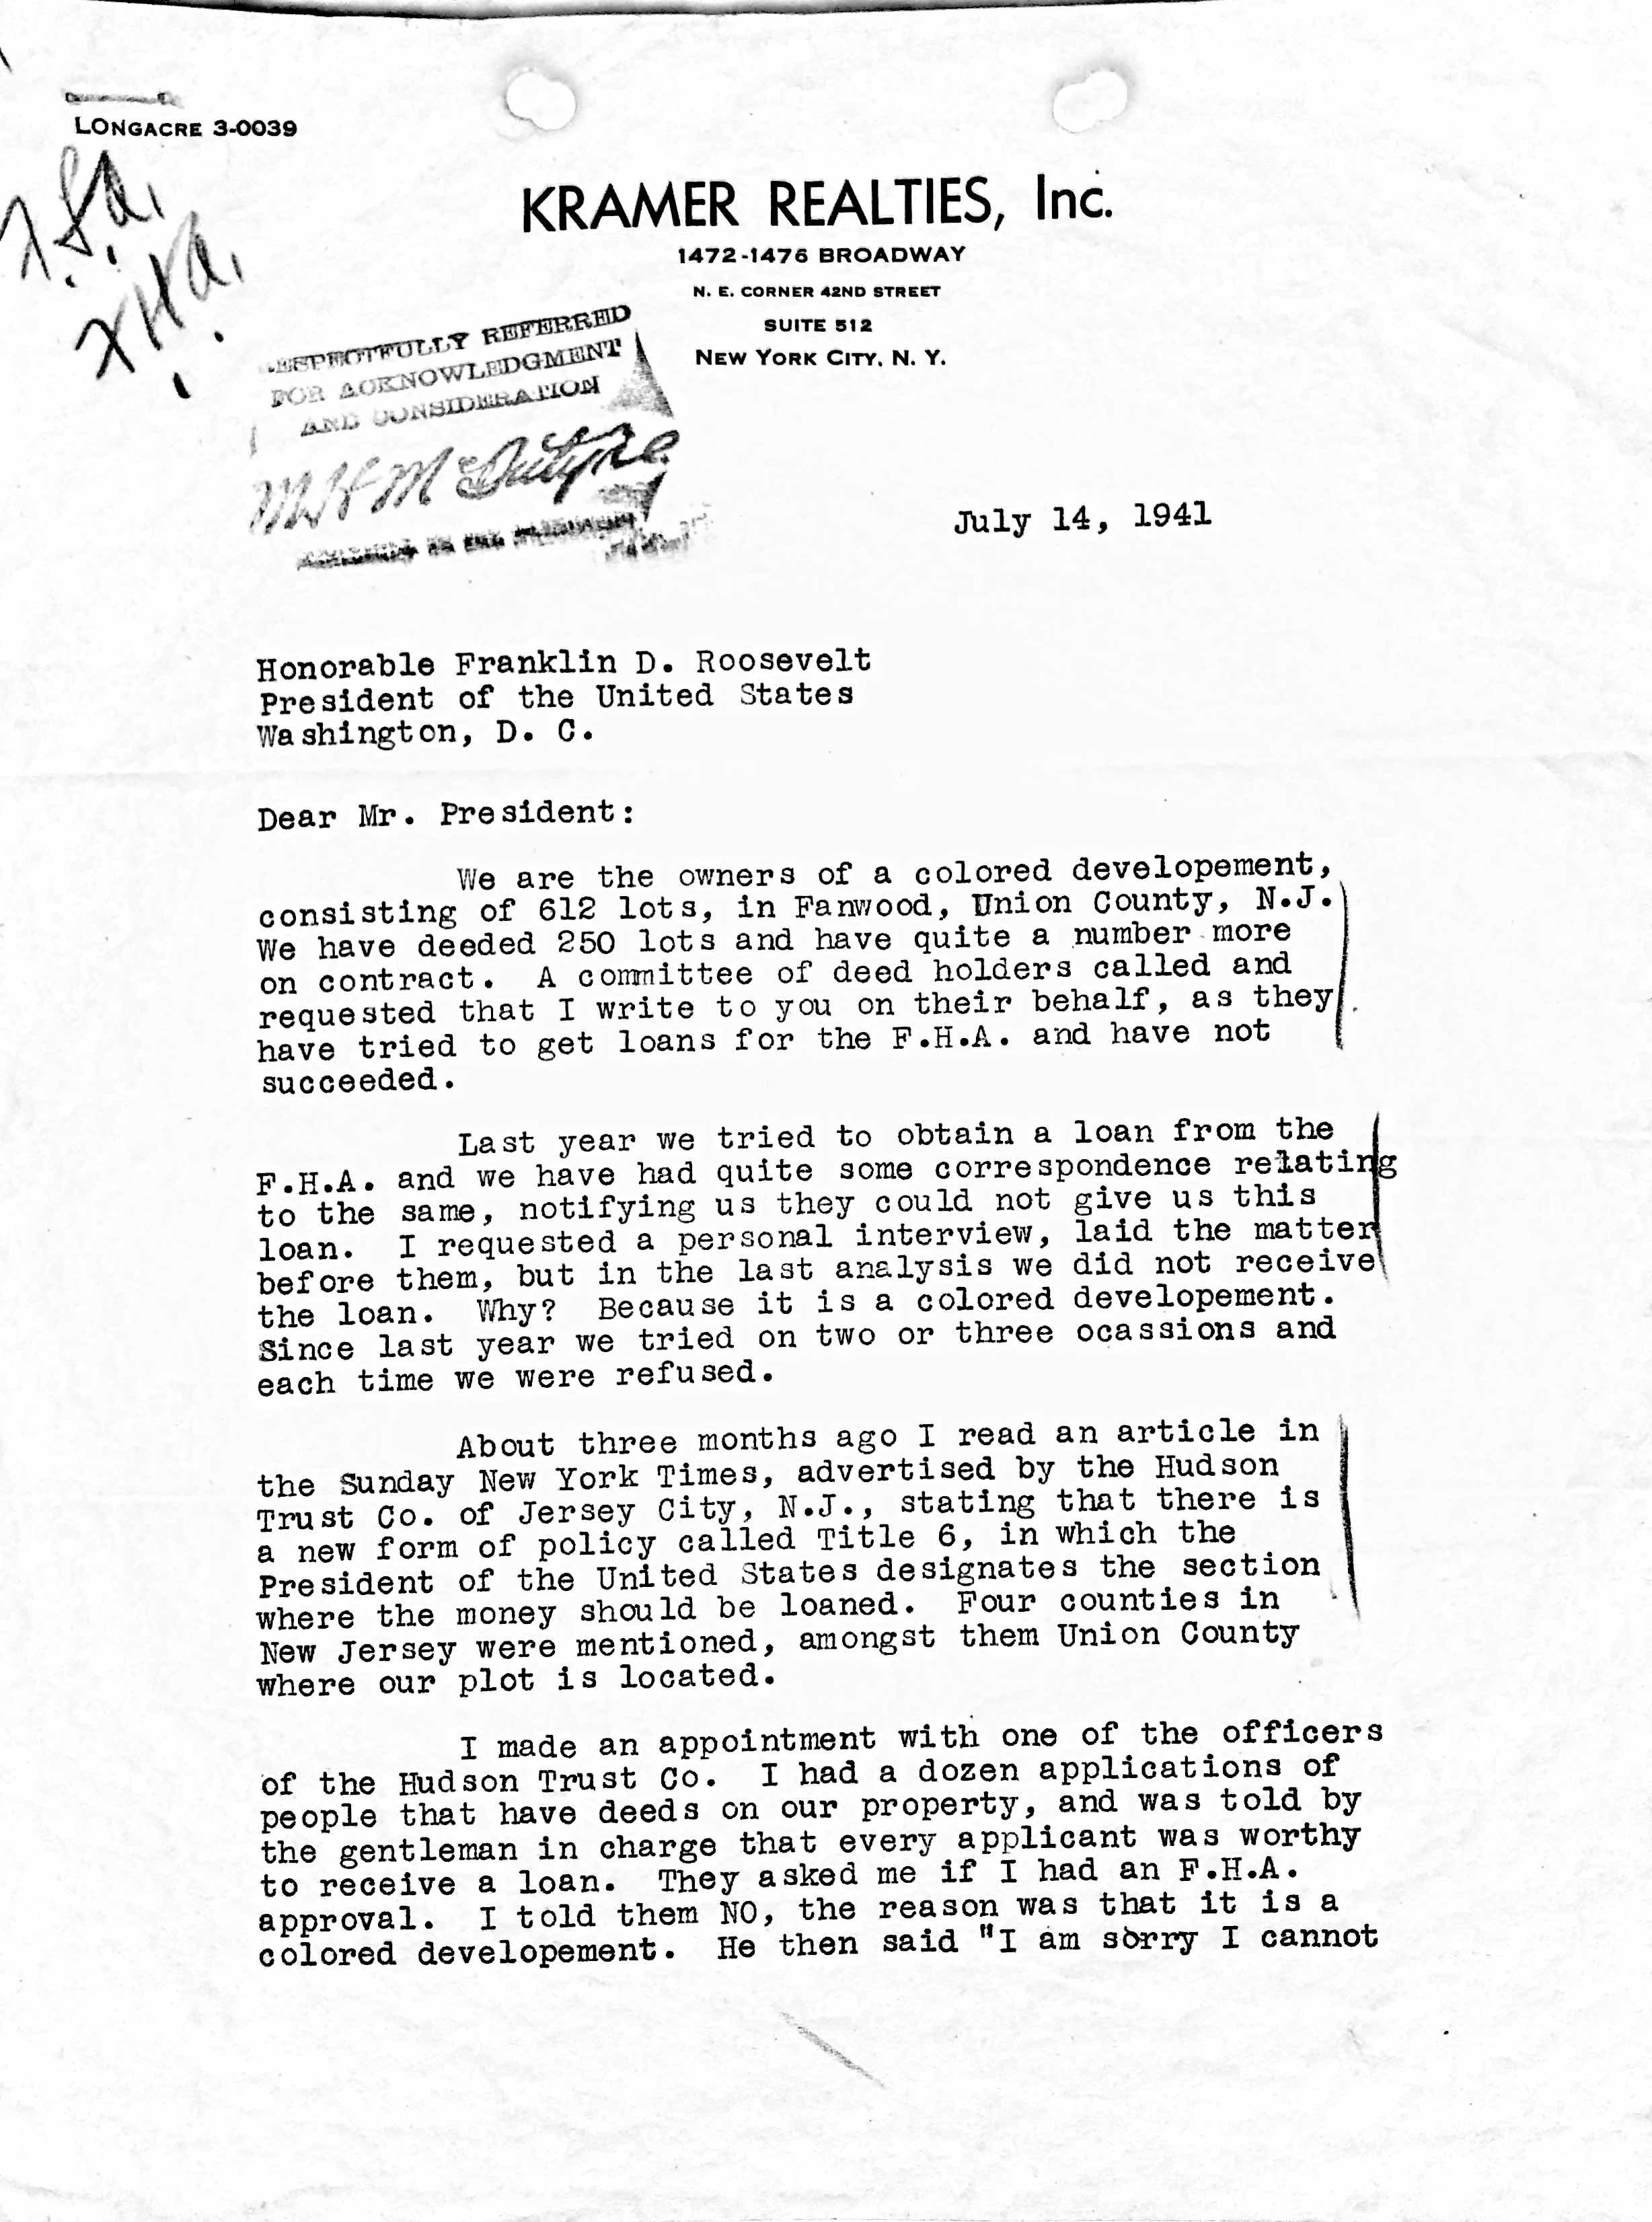 Harry Kramer to FDR letter - Apr 7 2022 - 1-24 PM - p1.jpg